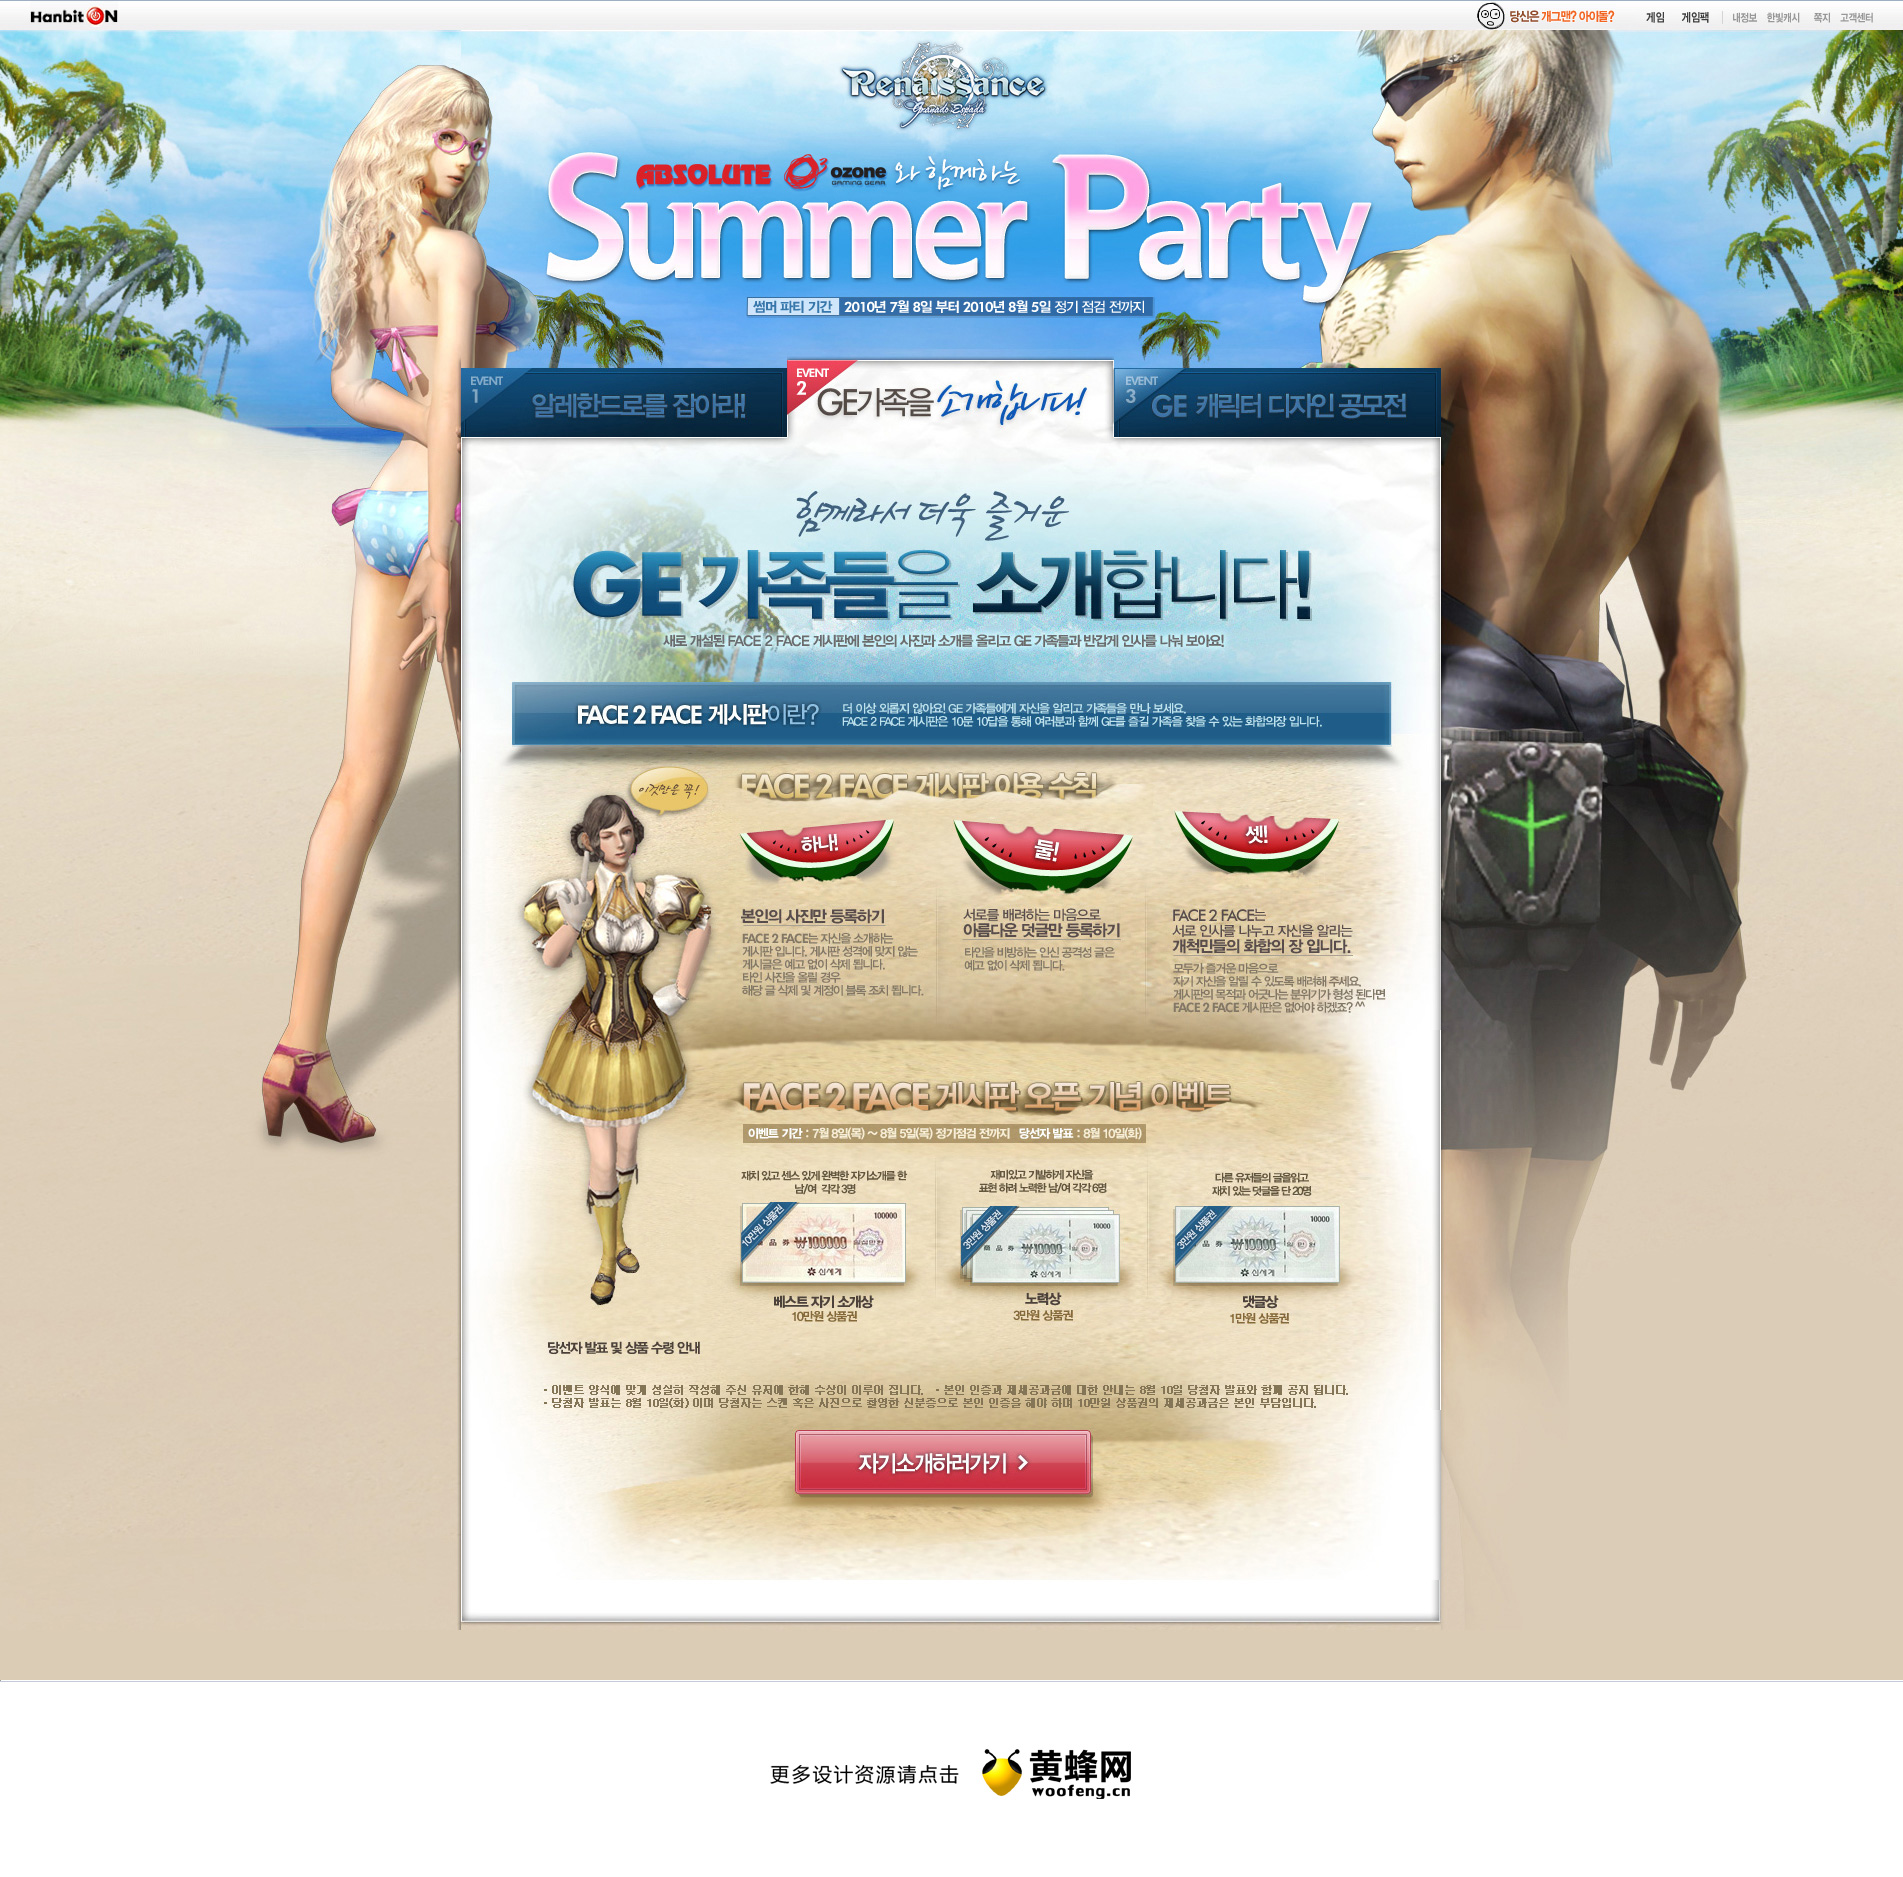 夏日派对游戏活动专题页面设计欣赏，来源自黄蜂网https://woofeng.cn